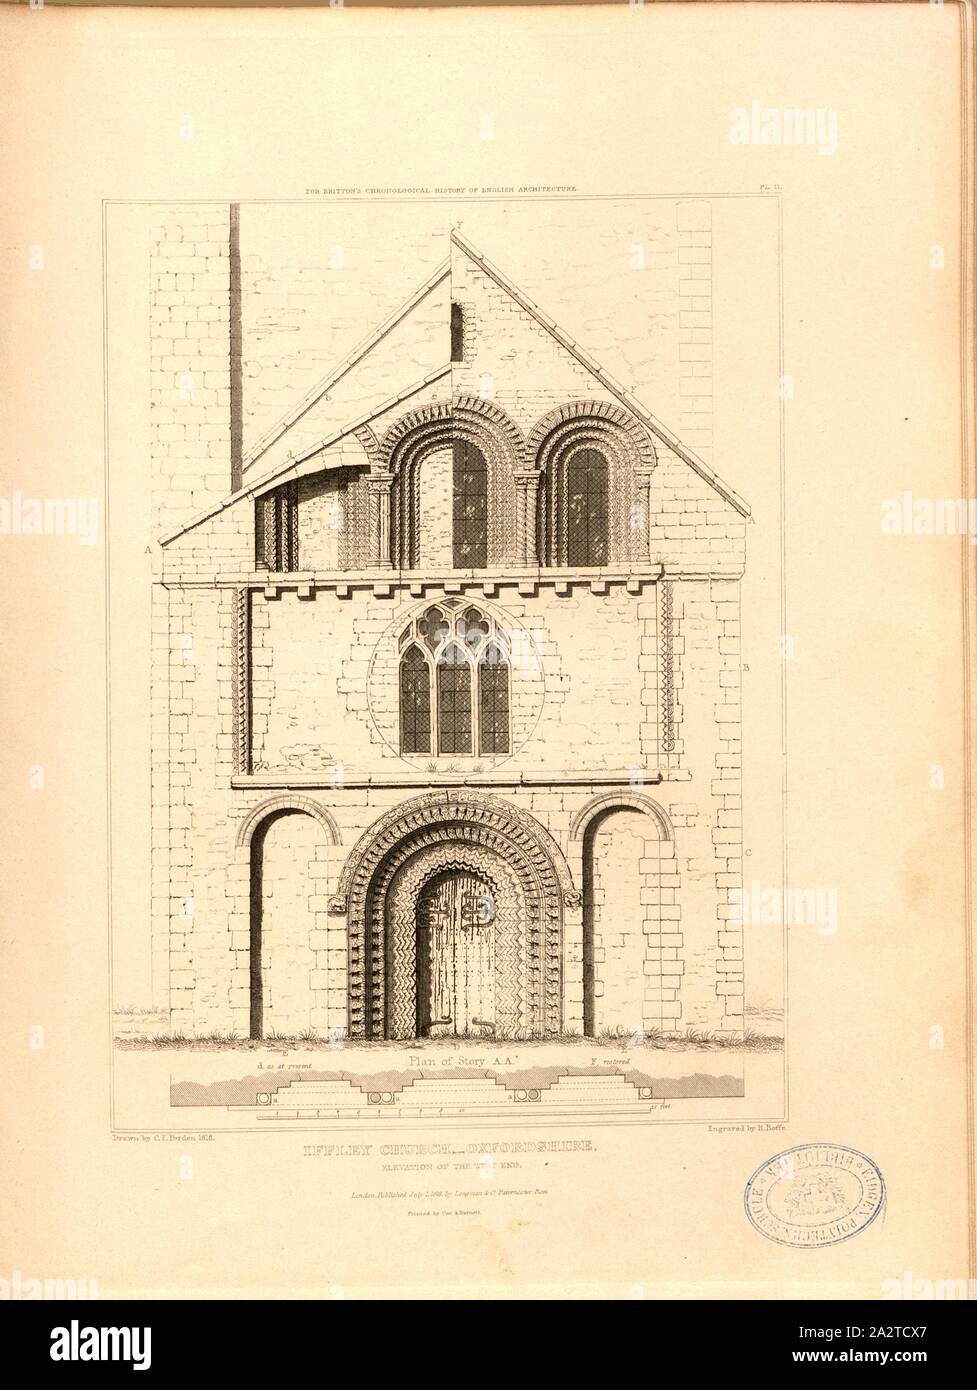 Iffley Chiesa, Oxfordshire, elevazione del west end, elevazione della chiesa di Santa Maria a Iffley in Oxfordshire, firmato: disegnato da C.F. Porden; incisi da R. Roffe; pubblicato da Longman & Co, Fig. 9, Pl. II, dopo p. 260, Porden, C. F. (disegno); Roffe, Richard (incisione); Longman & Co. (Pubblicata), 1818, John Britton: l'antichità architettoniche di Gran Bretagna: rappresentato ed illustrato in una serie di viste, elevazioni, piani, le sezioni e i dettagli di vari antichi edifici inglese: con la cronologia e conti descrittivo di ciascuno. Bd. 5. Londra: J. Taylor, 1807-1826 Foto Stock